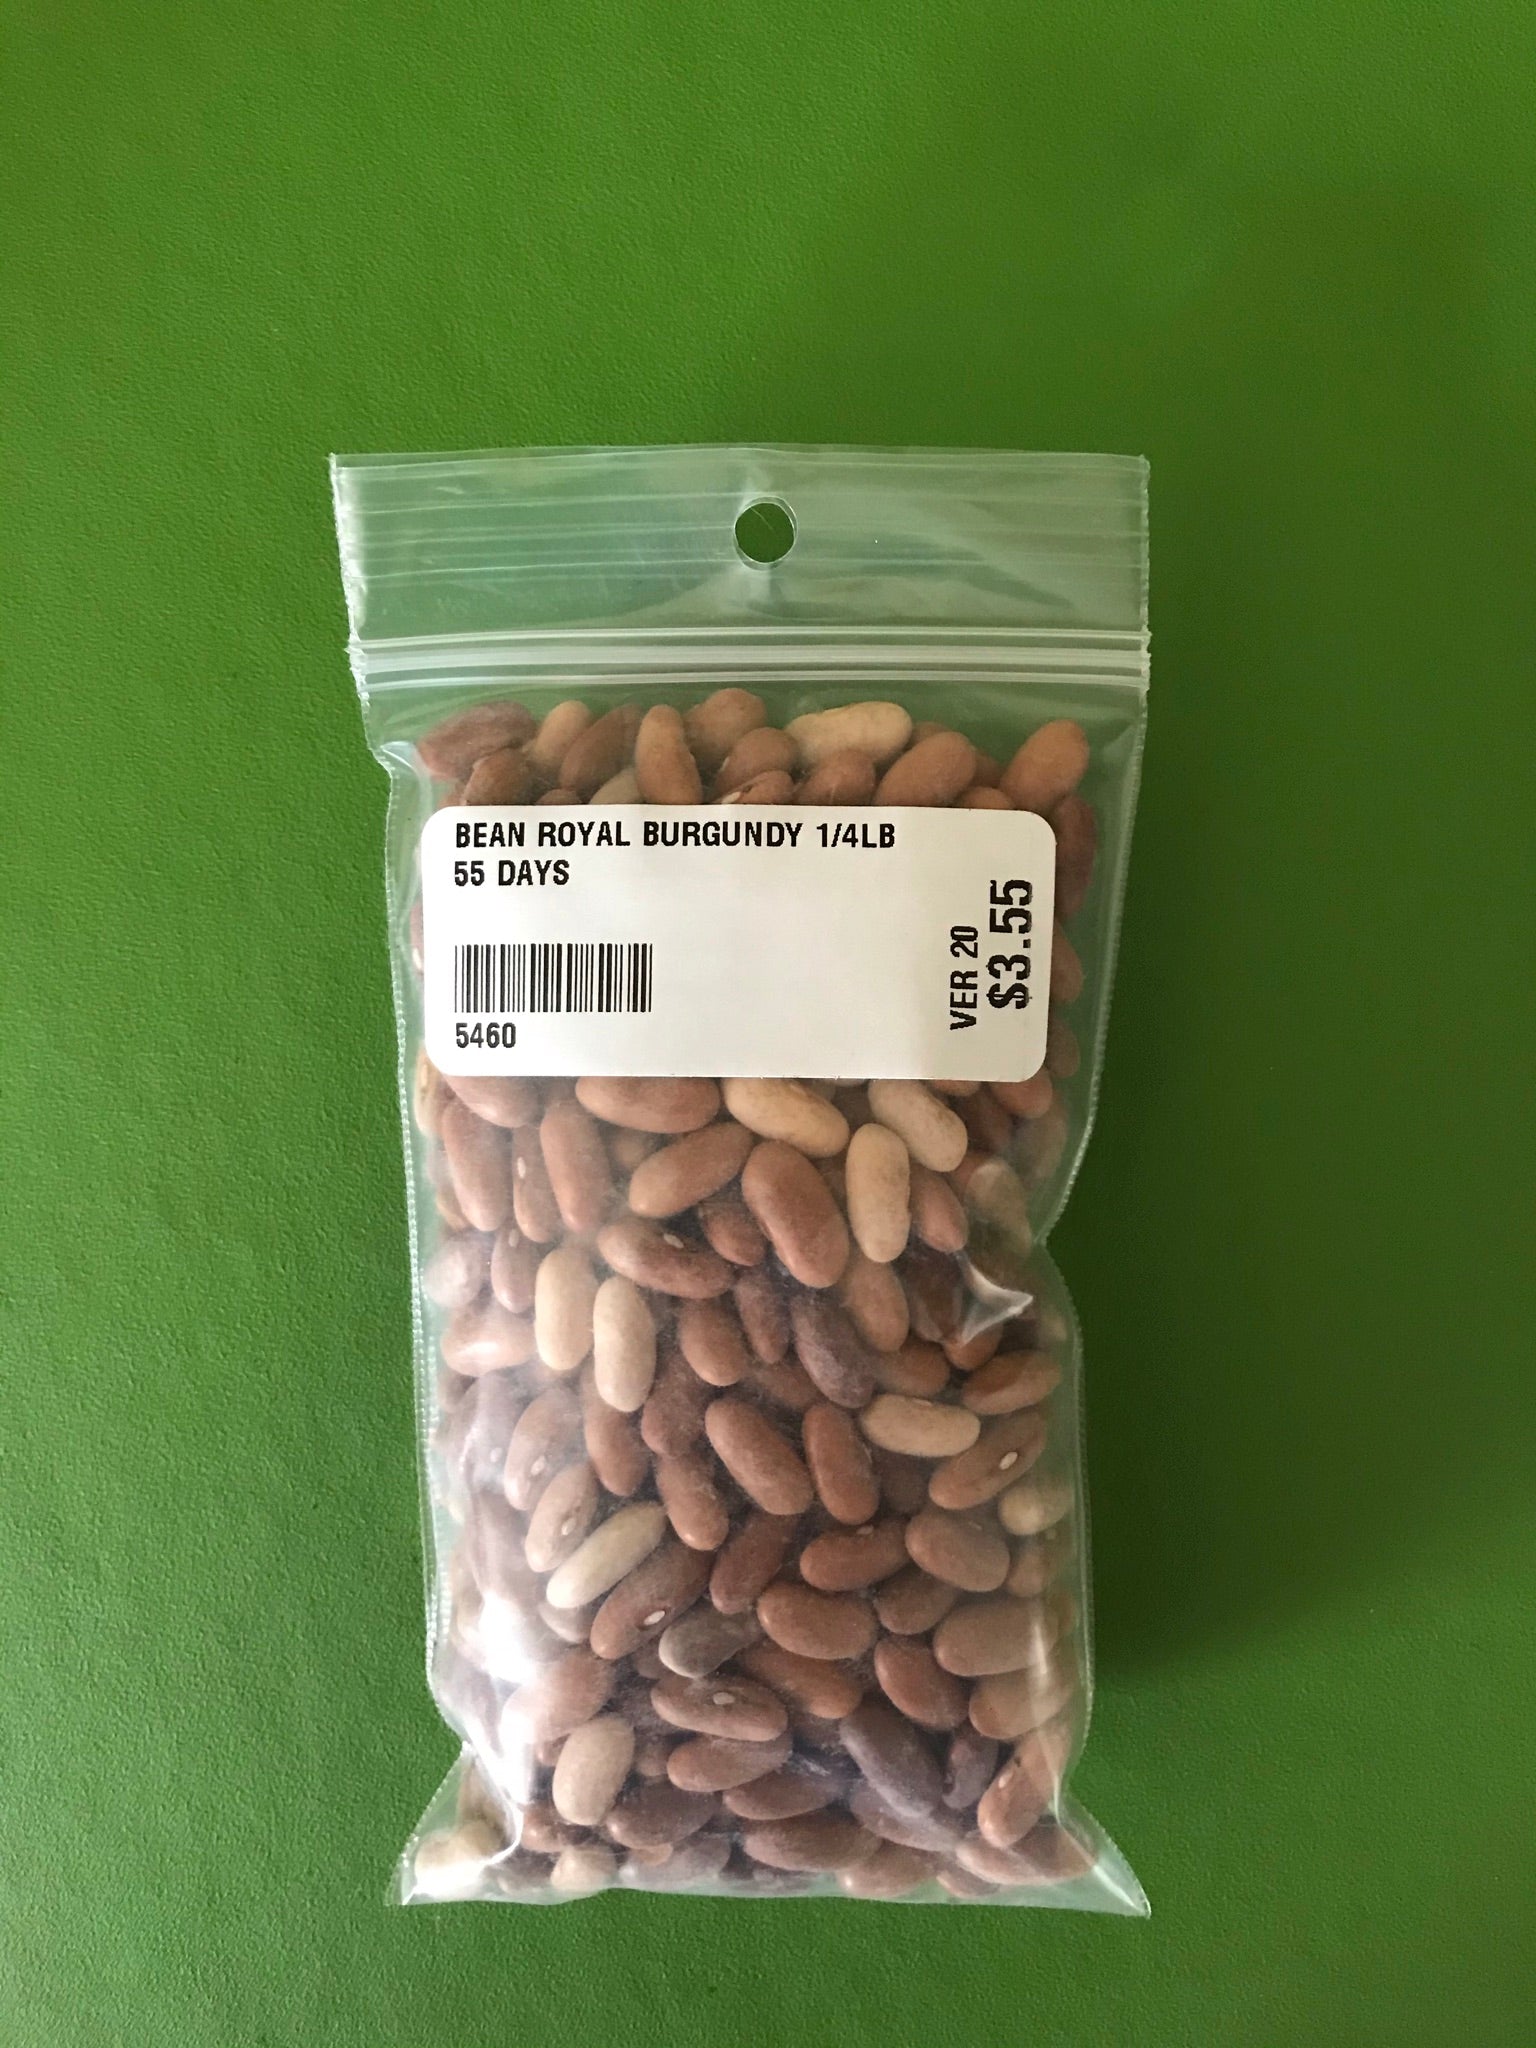 Royal Burgundy Bush Bean Seeds (55 Days) - 1/4 lb - Bulk 55 DAYS